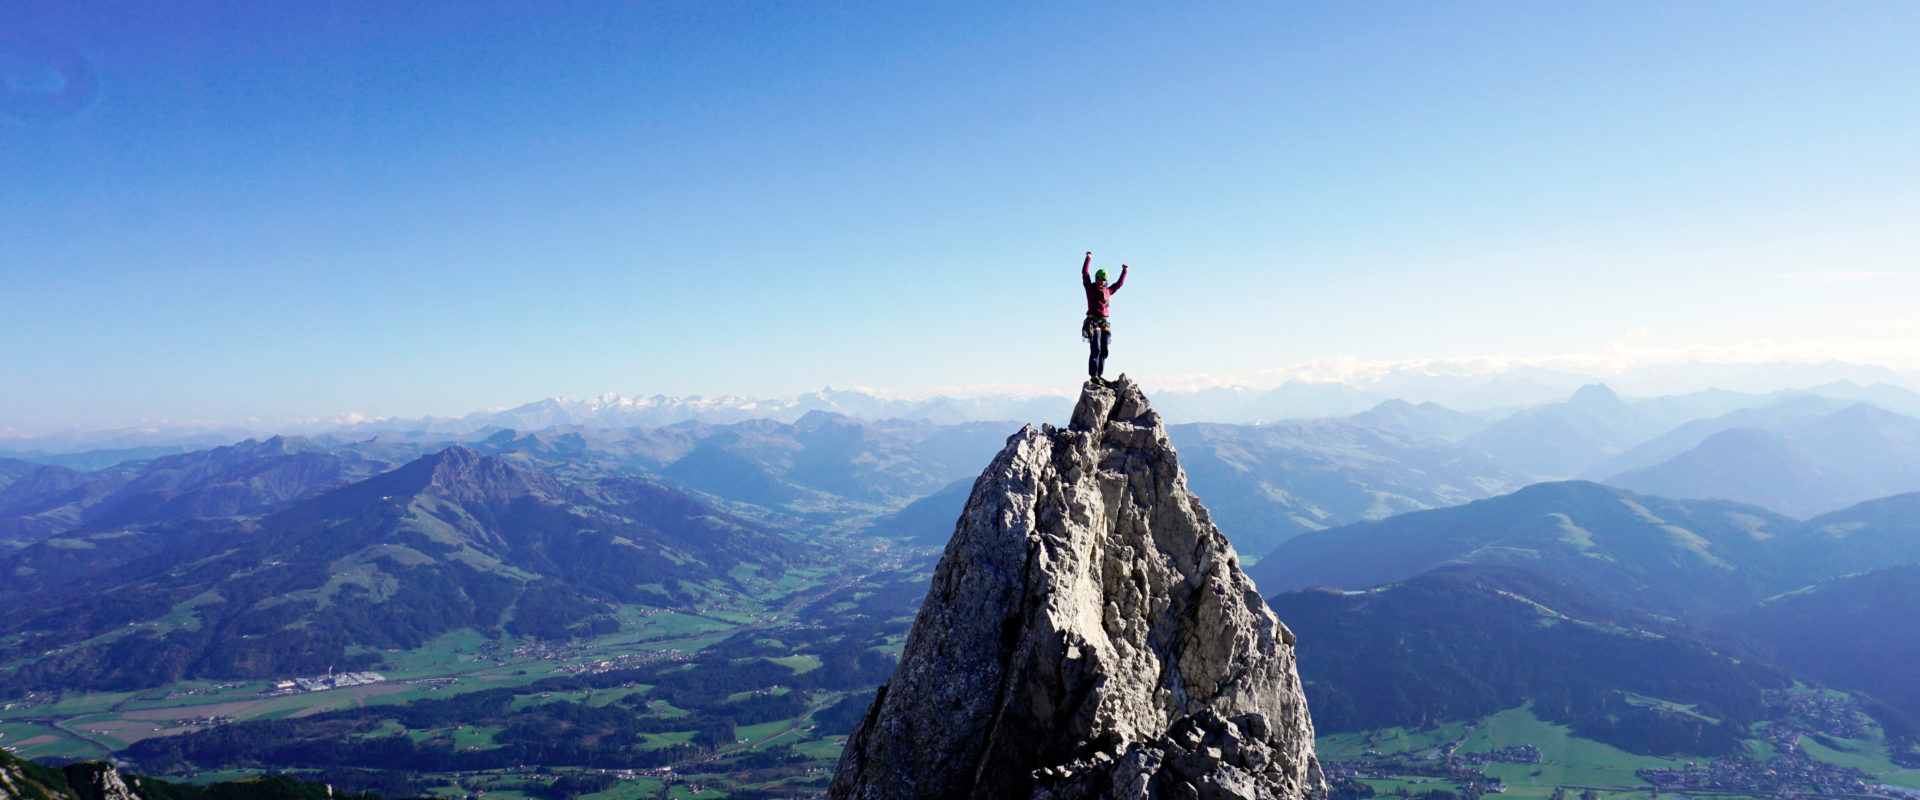 Eva Schider steht auf einem Felszacken im wilden Kaiser mit viel Himmel und Weite im Panorama Hintergrund.